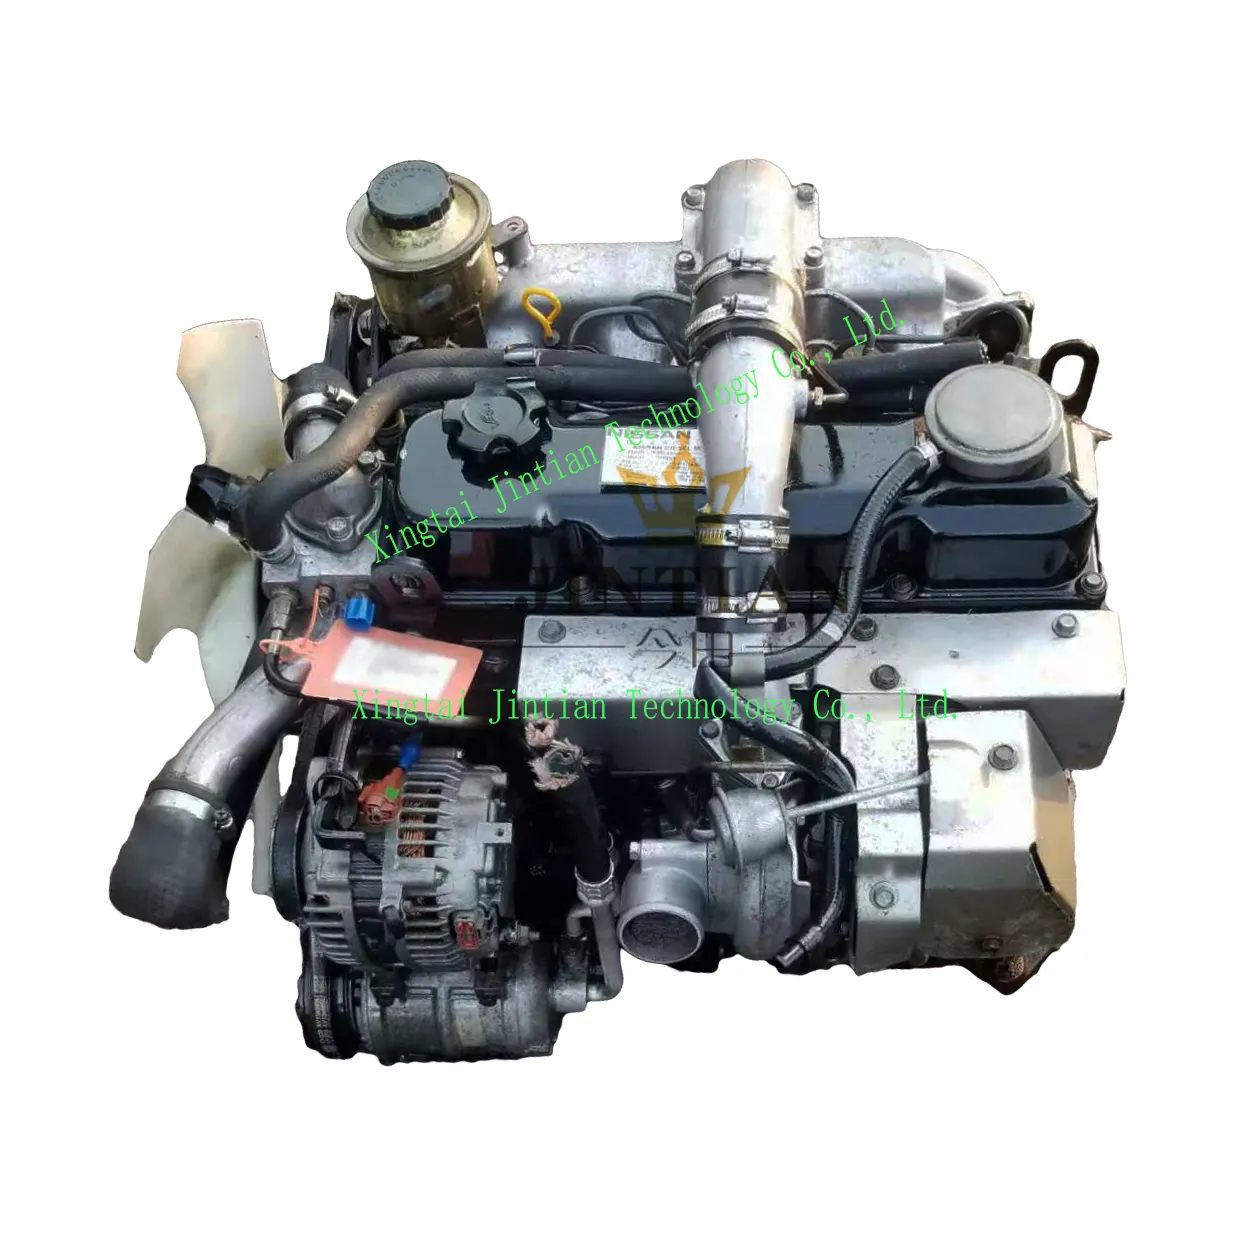 Полный бывший в употреблении QD32 двигатель с турбодизельным двигателем для продажи